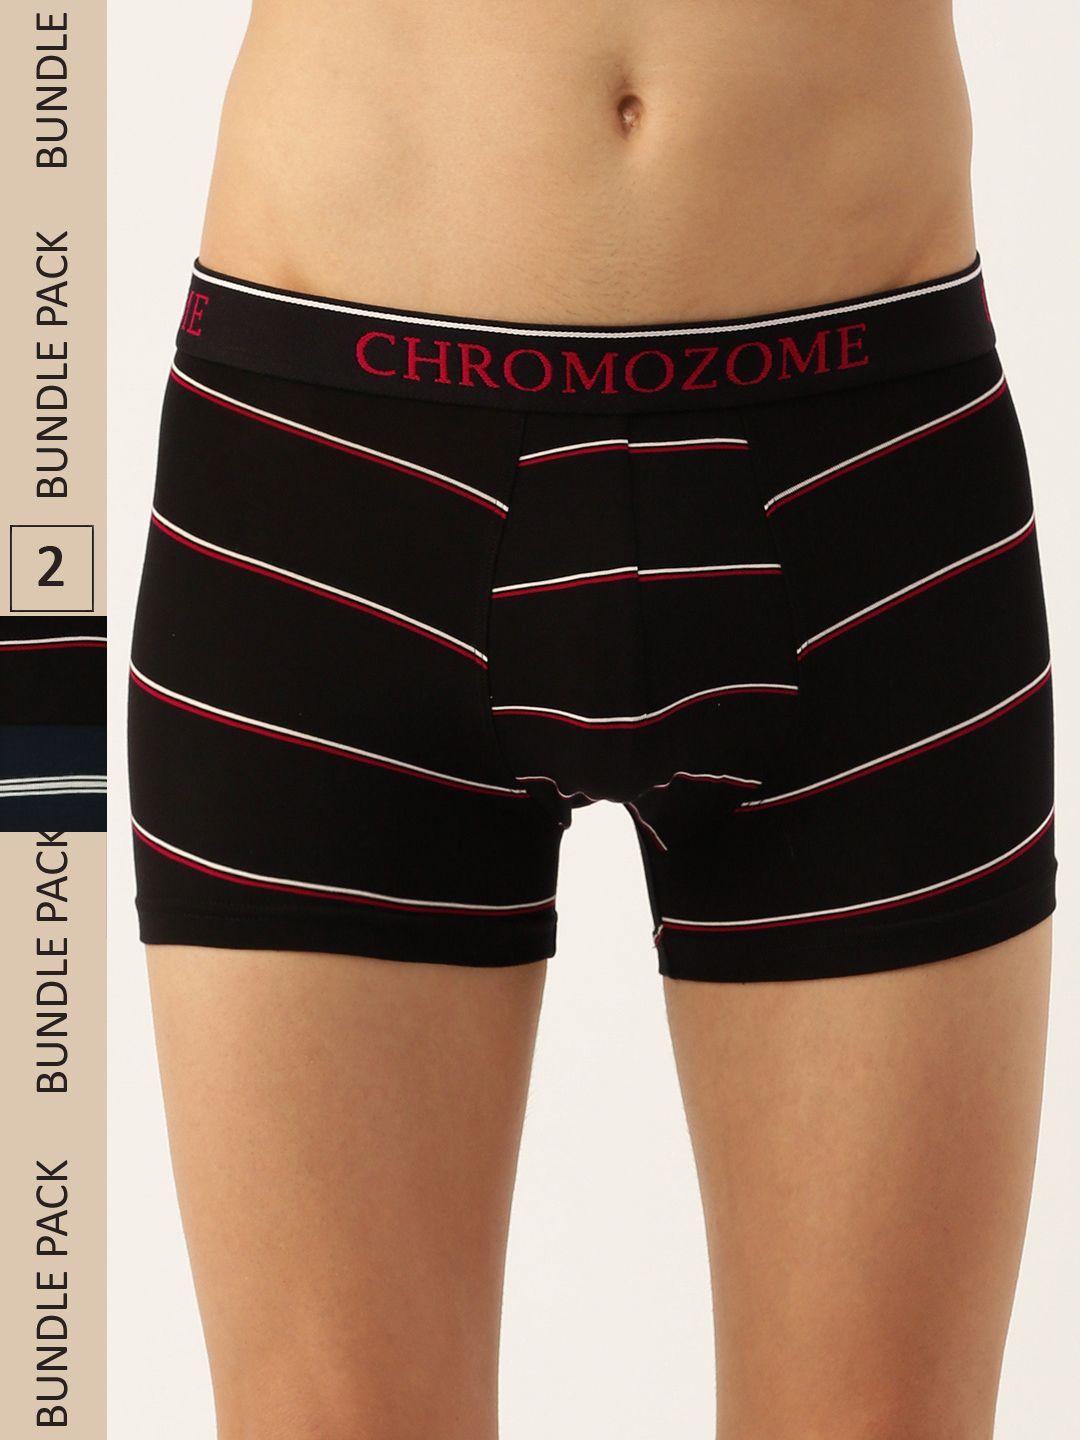 chromozome men pack of 2 ultra-premium striped trunks 8902733643542